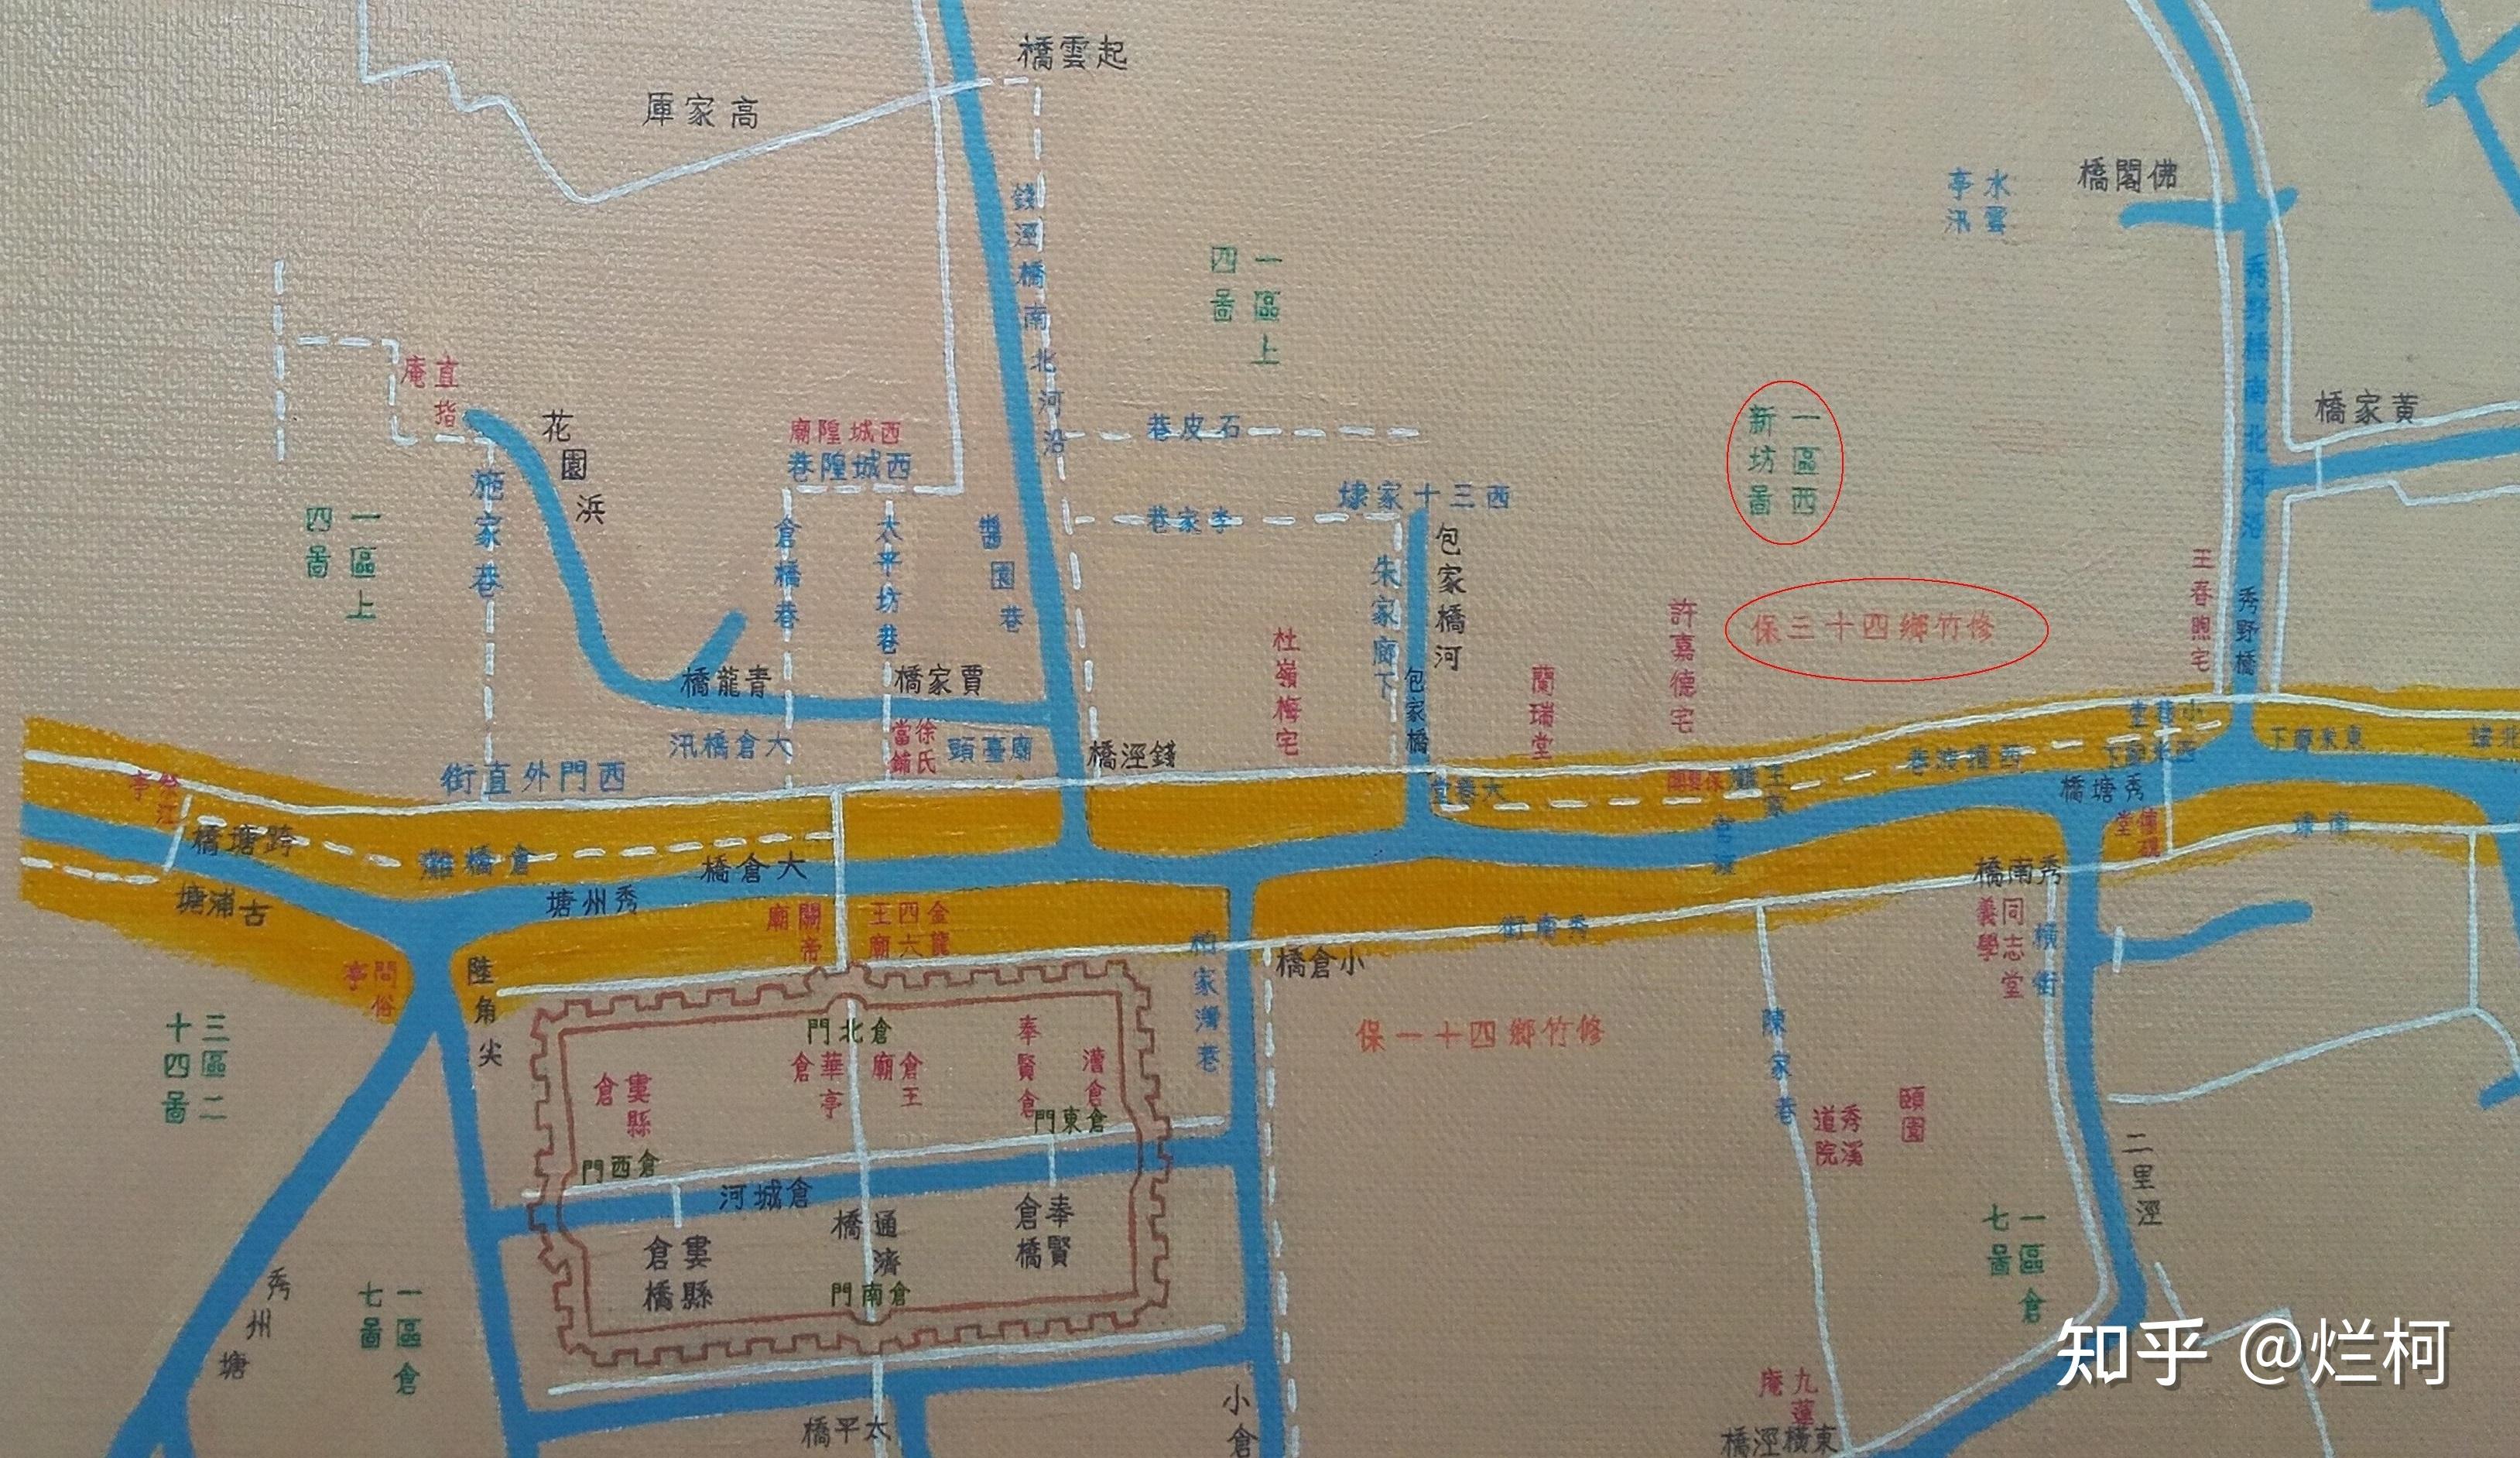 【伴公汀】触摸古松江的山川河流,松江一对母子绘成两幅古松江地图一